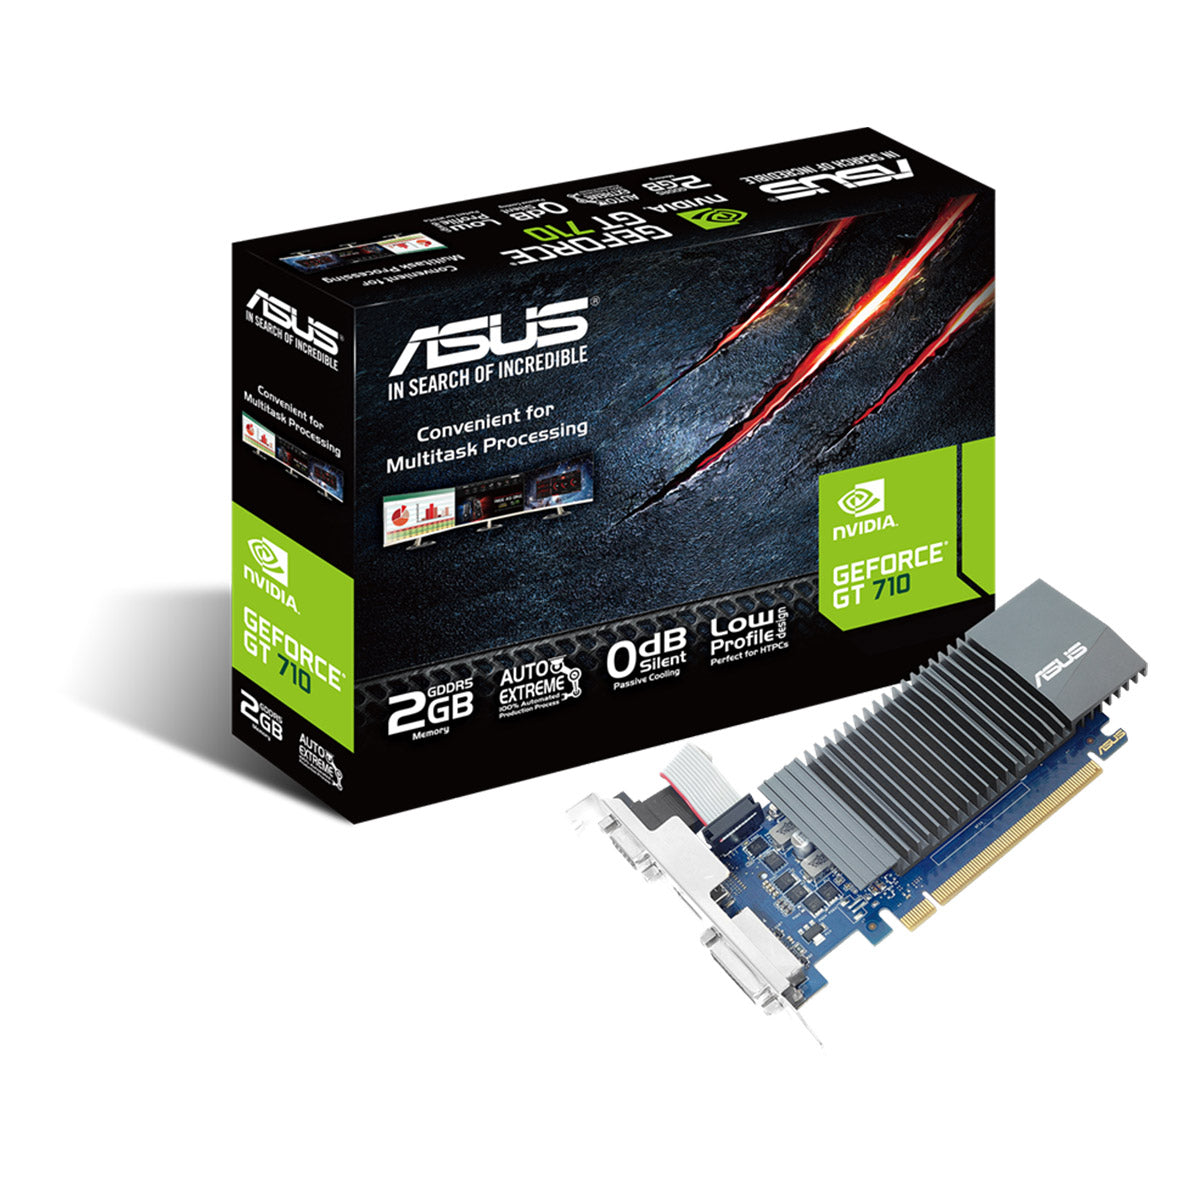 Asus GeForce GT 710 2GB GDDR5 64-बिट ग्राफ़िक्स कार्ड 0db कुशल कूलिंग के साथ